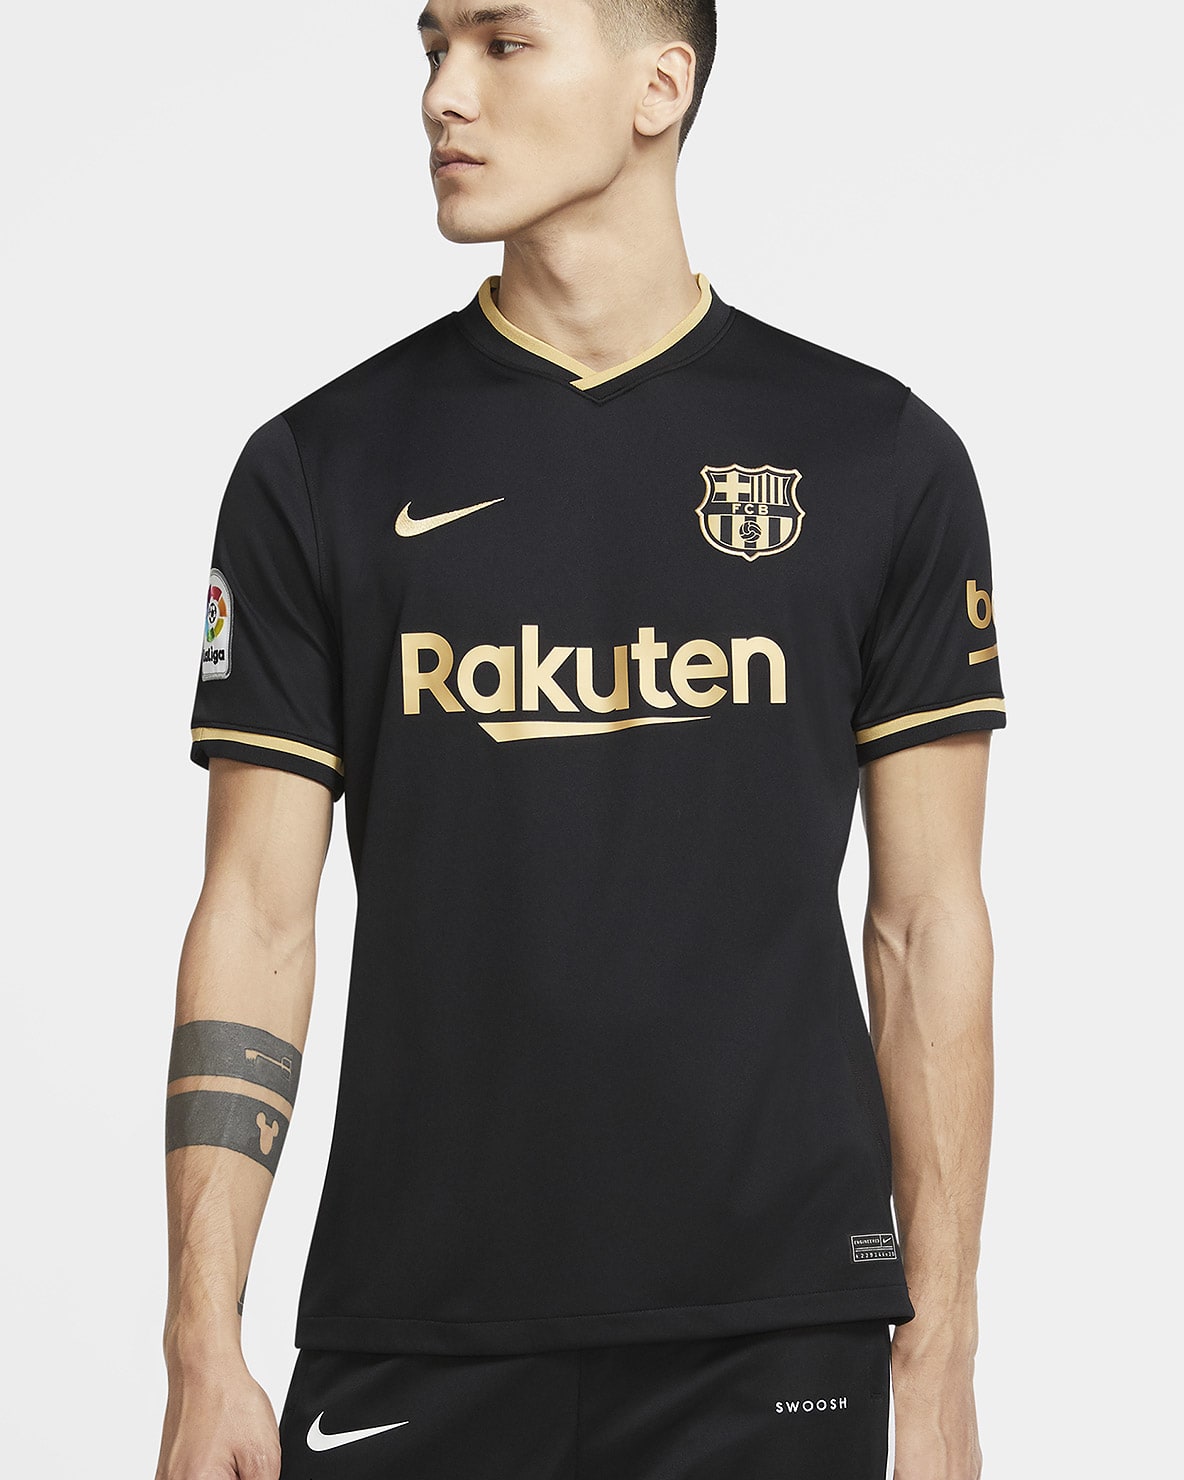 NIKE 2021-2022 Barcelona Training Football Soccer T-Shirt Black Kids